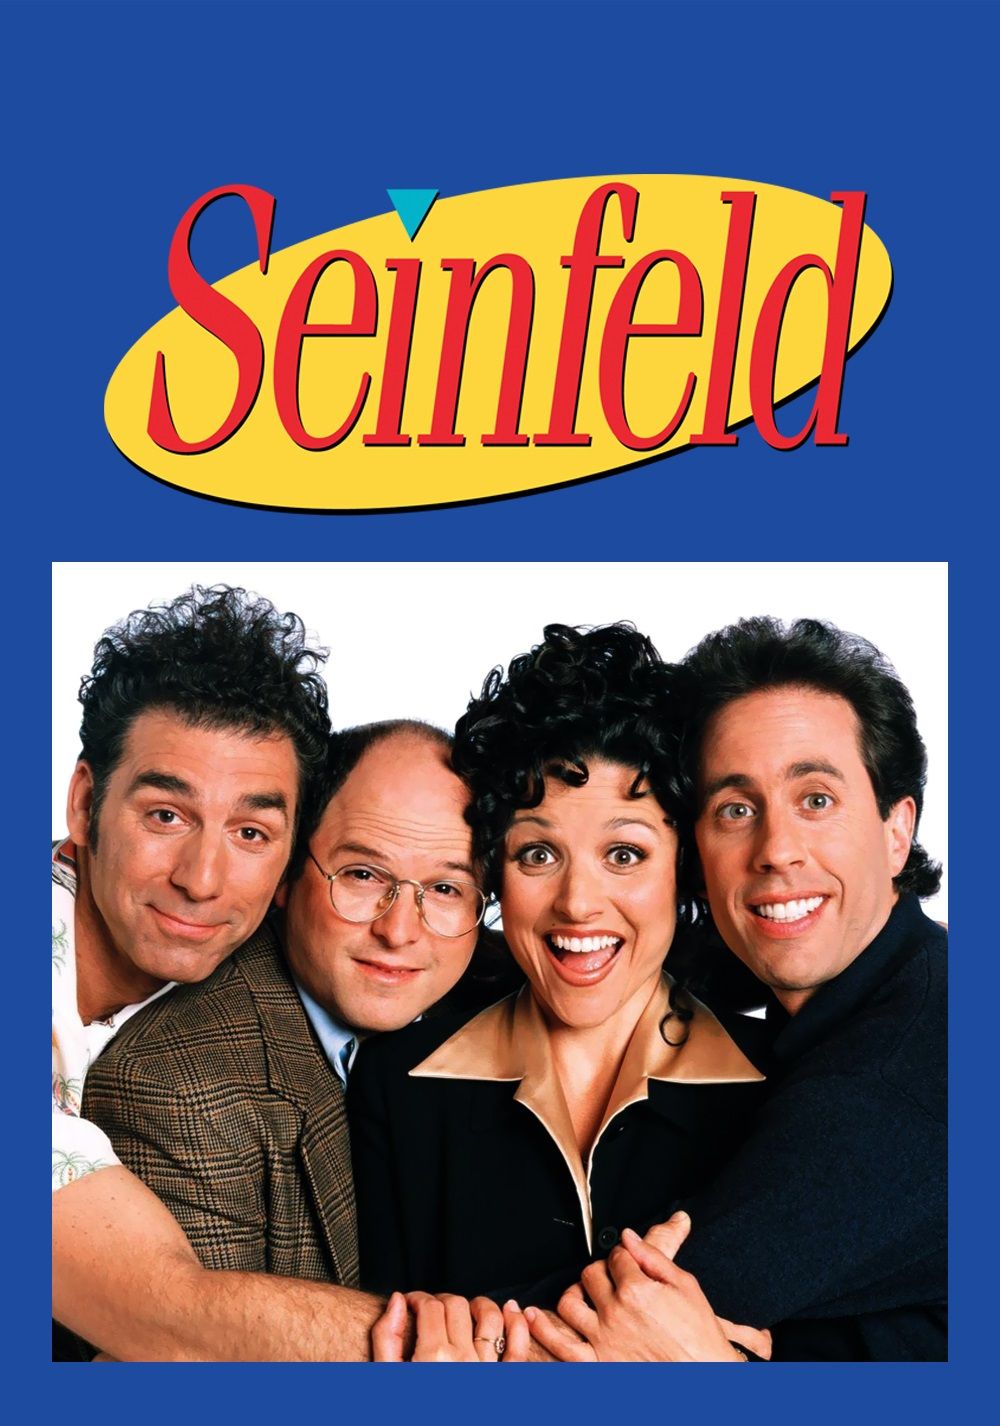 Pôster do programa de TV Seinfeld